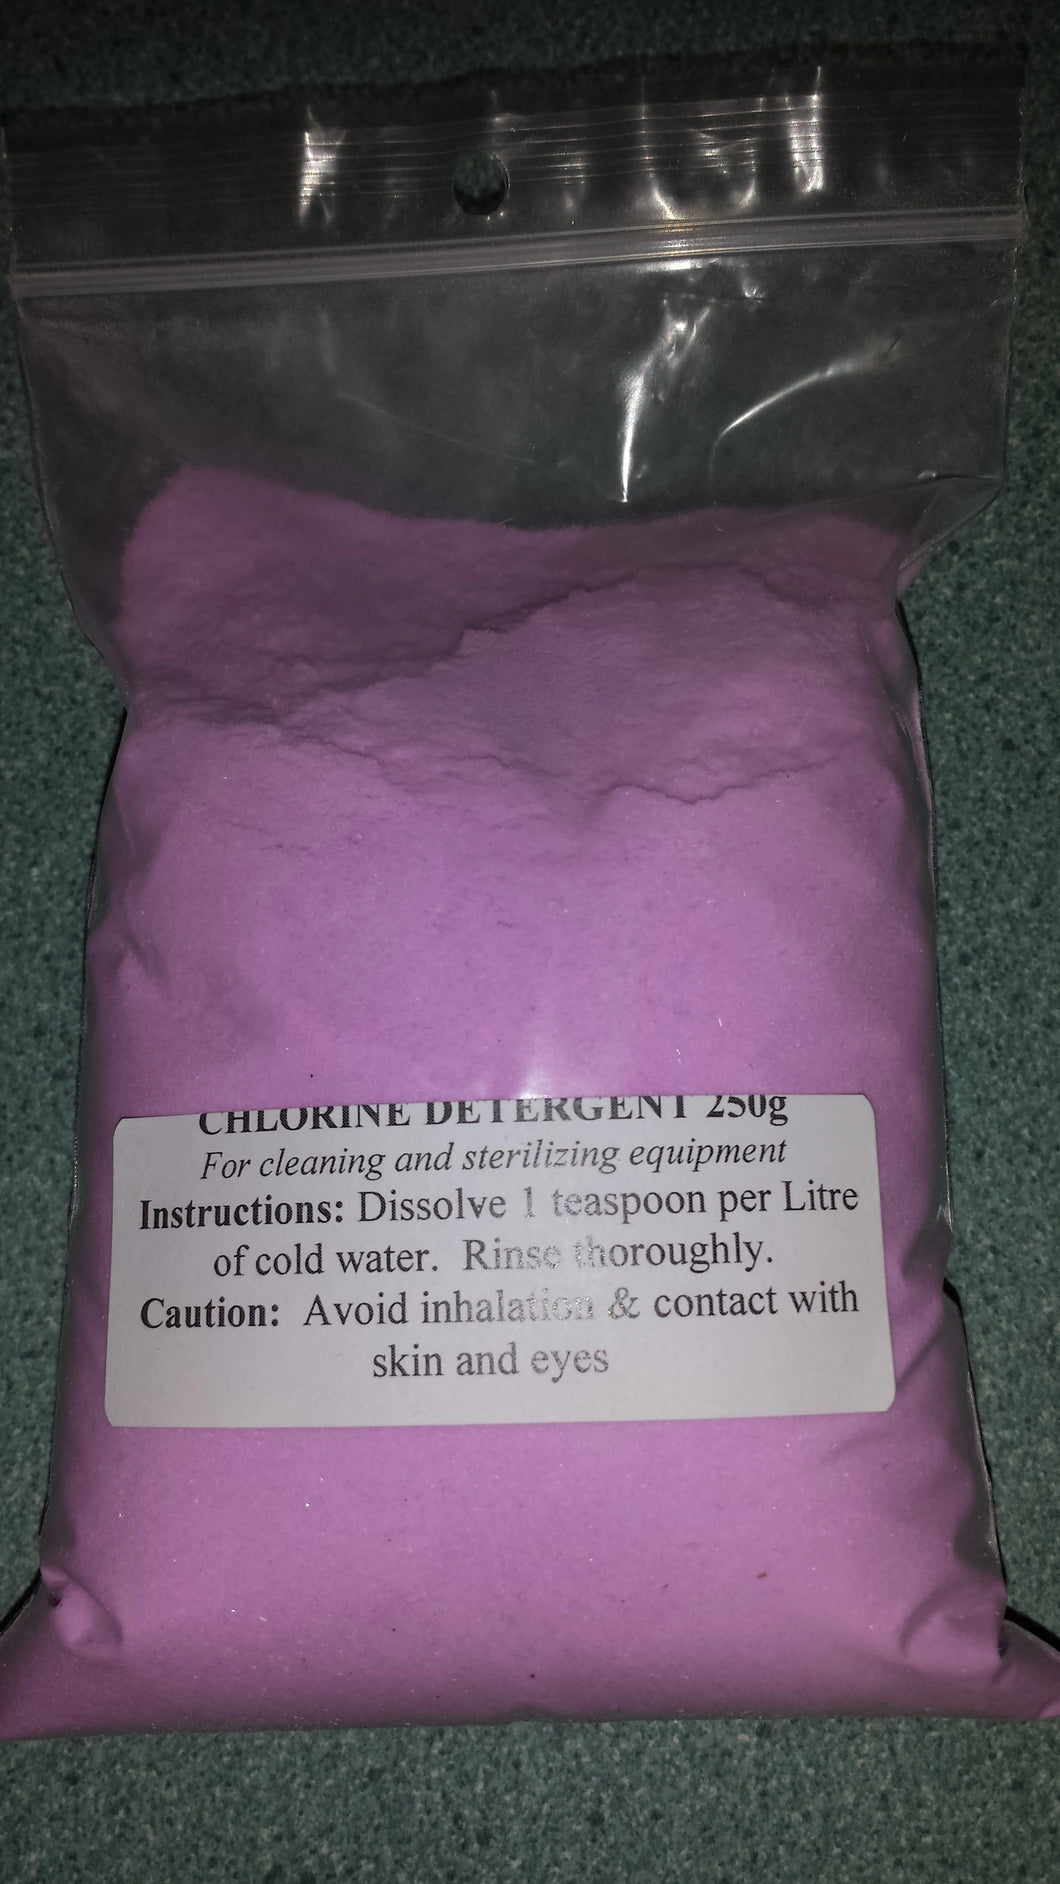 Chlorine Detergent 250g